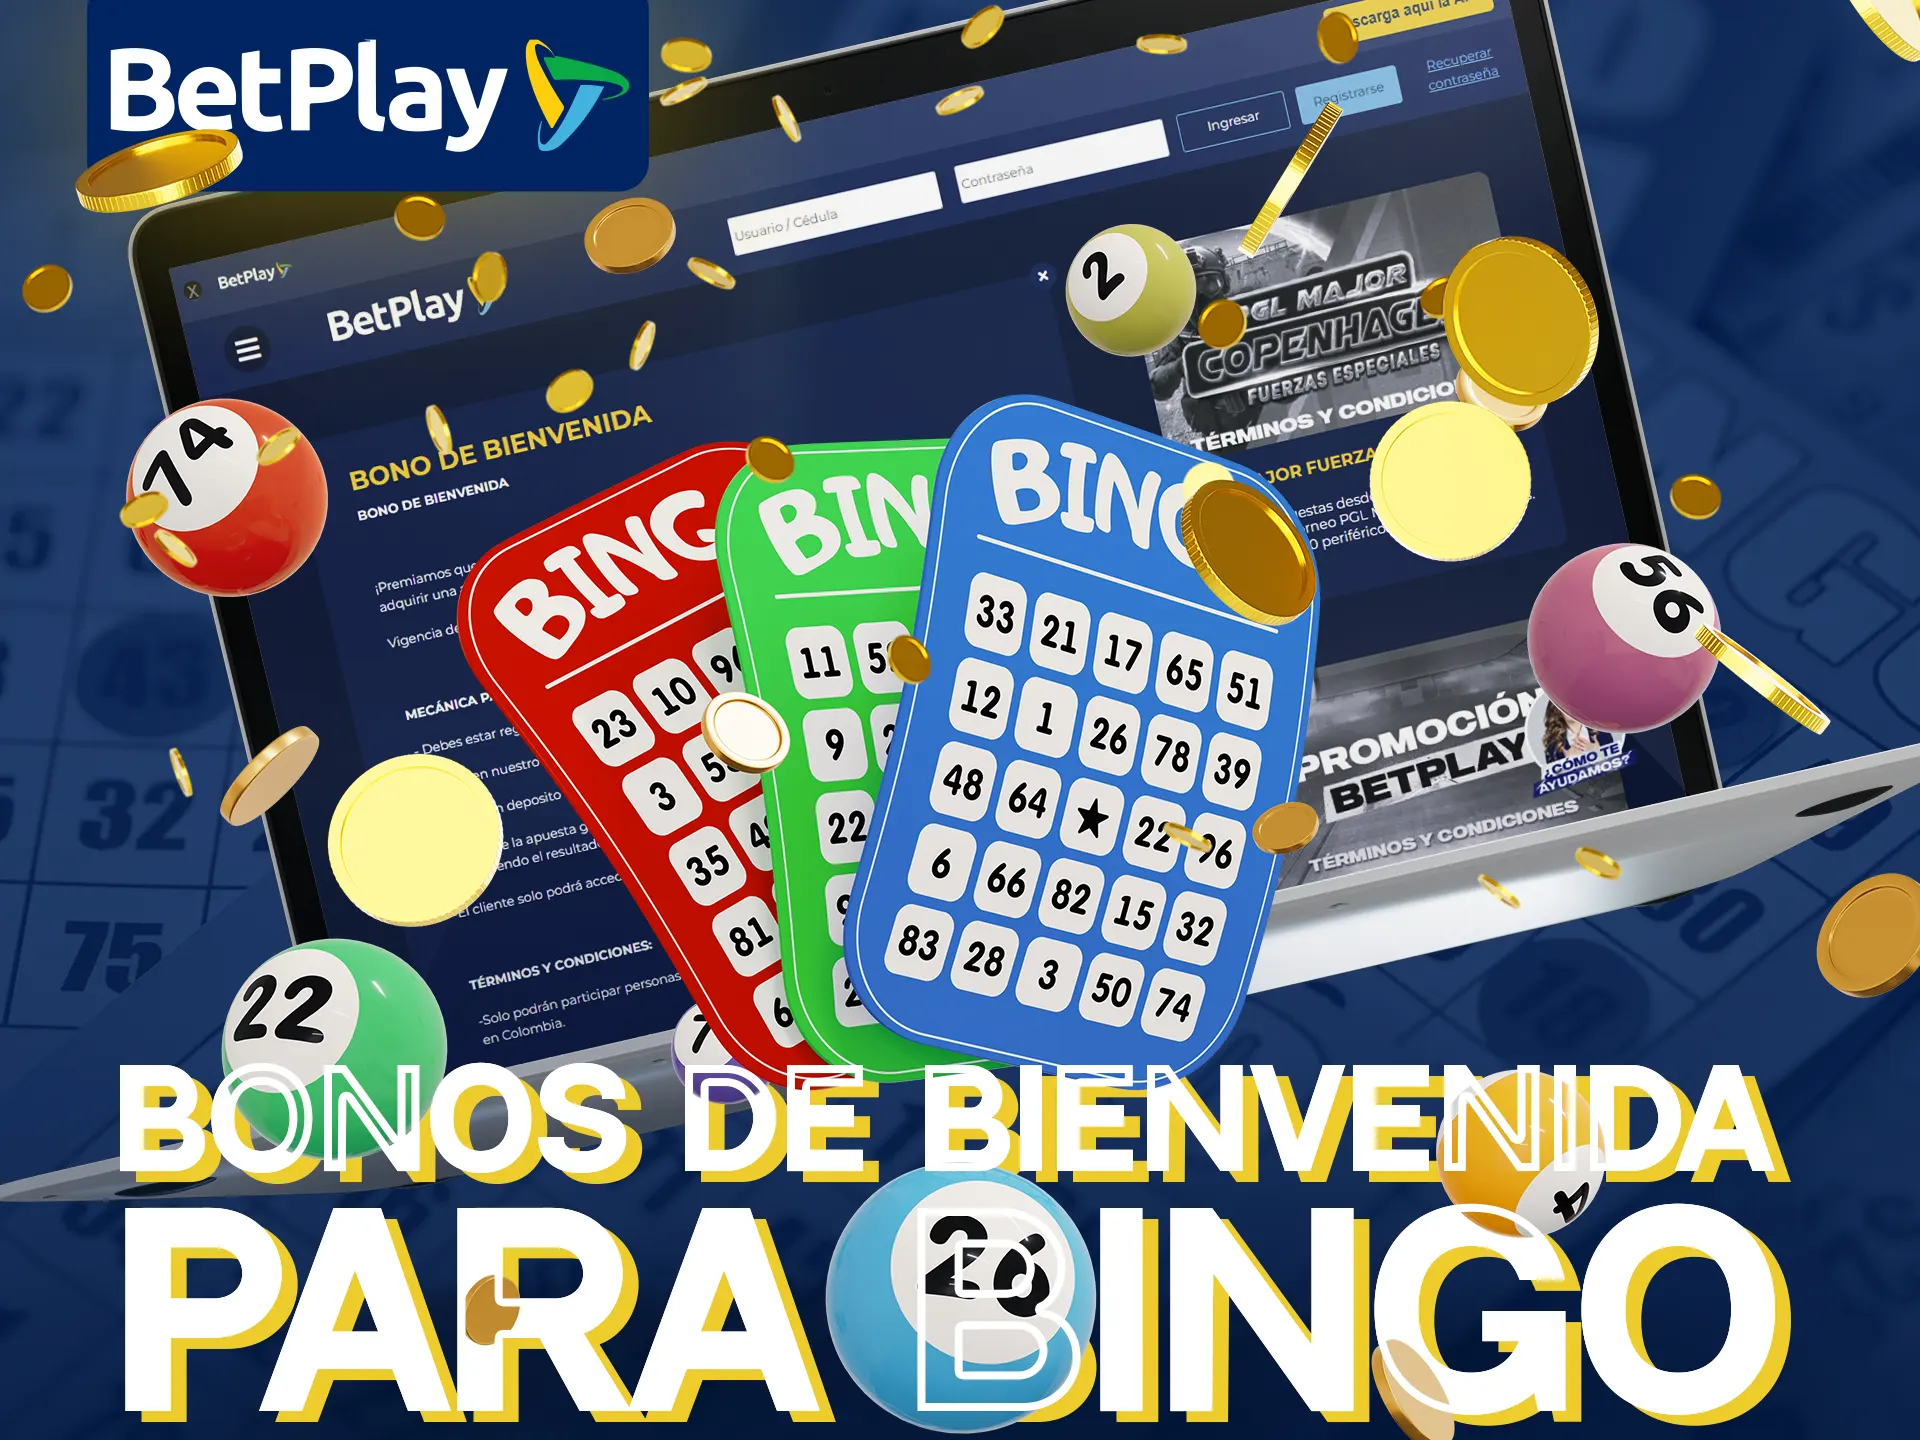 Consigue bonos de bienvenida de Bingo en BetPlay de hasta 78.000.000 COP.